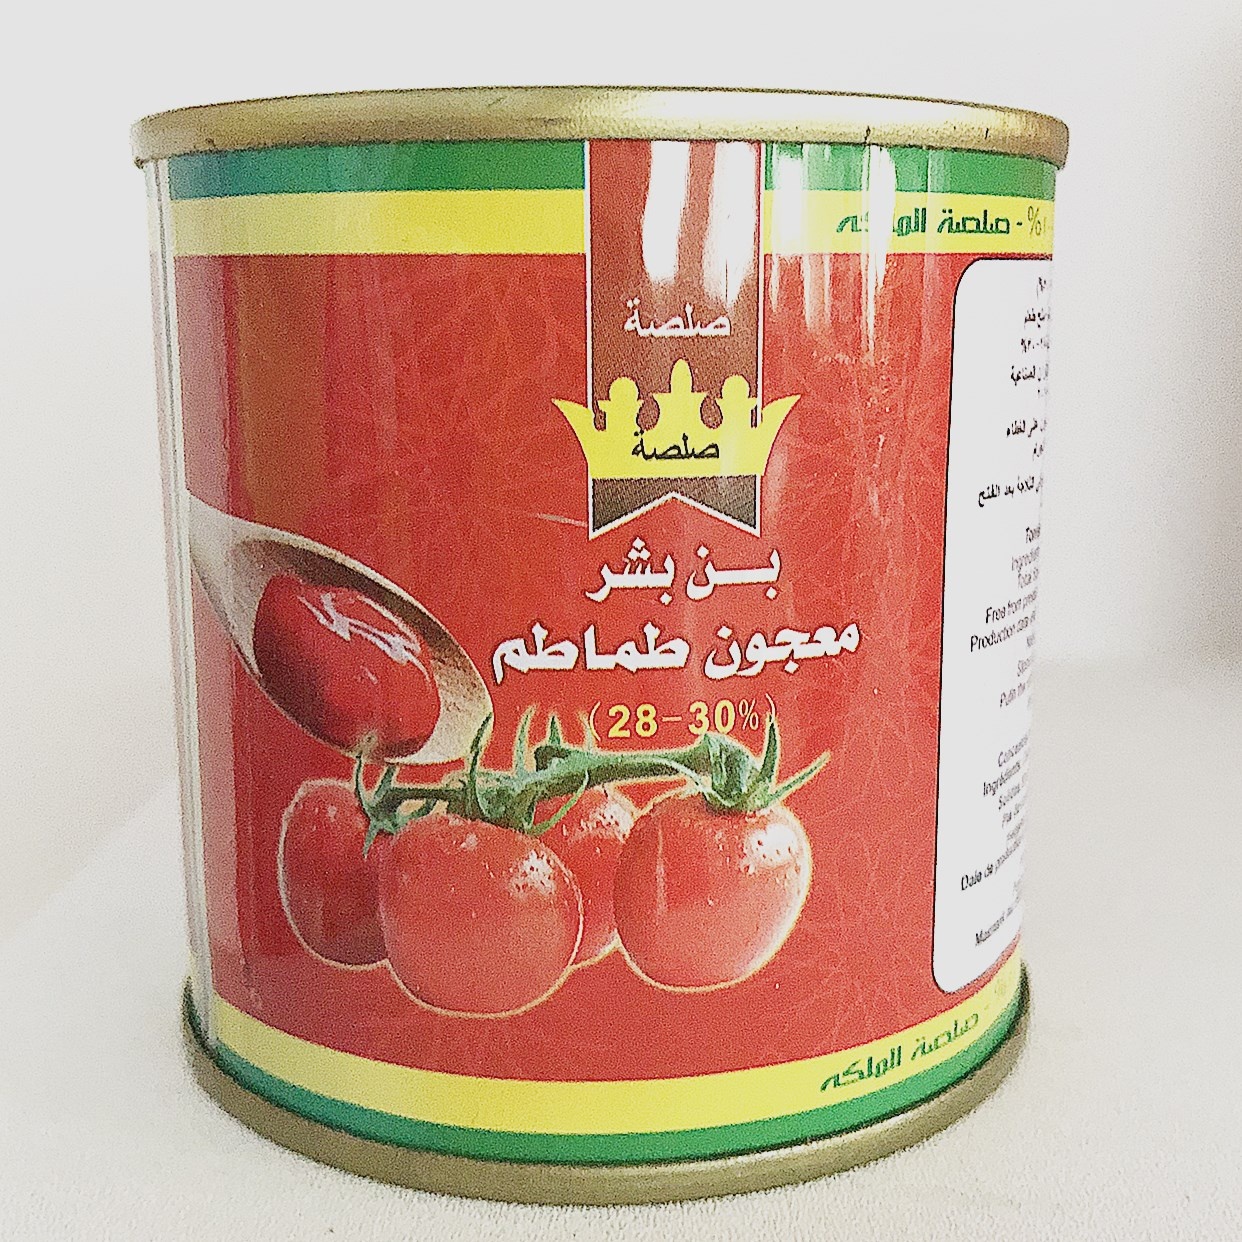 Konserven Tomate Paste a Liewensmëttel Supplier fir Dubai mat 100% Puritéit